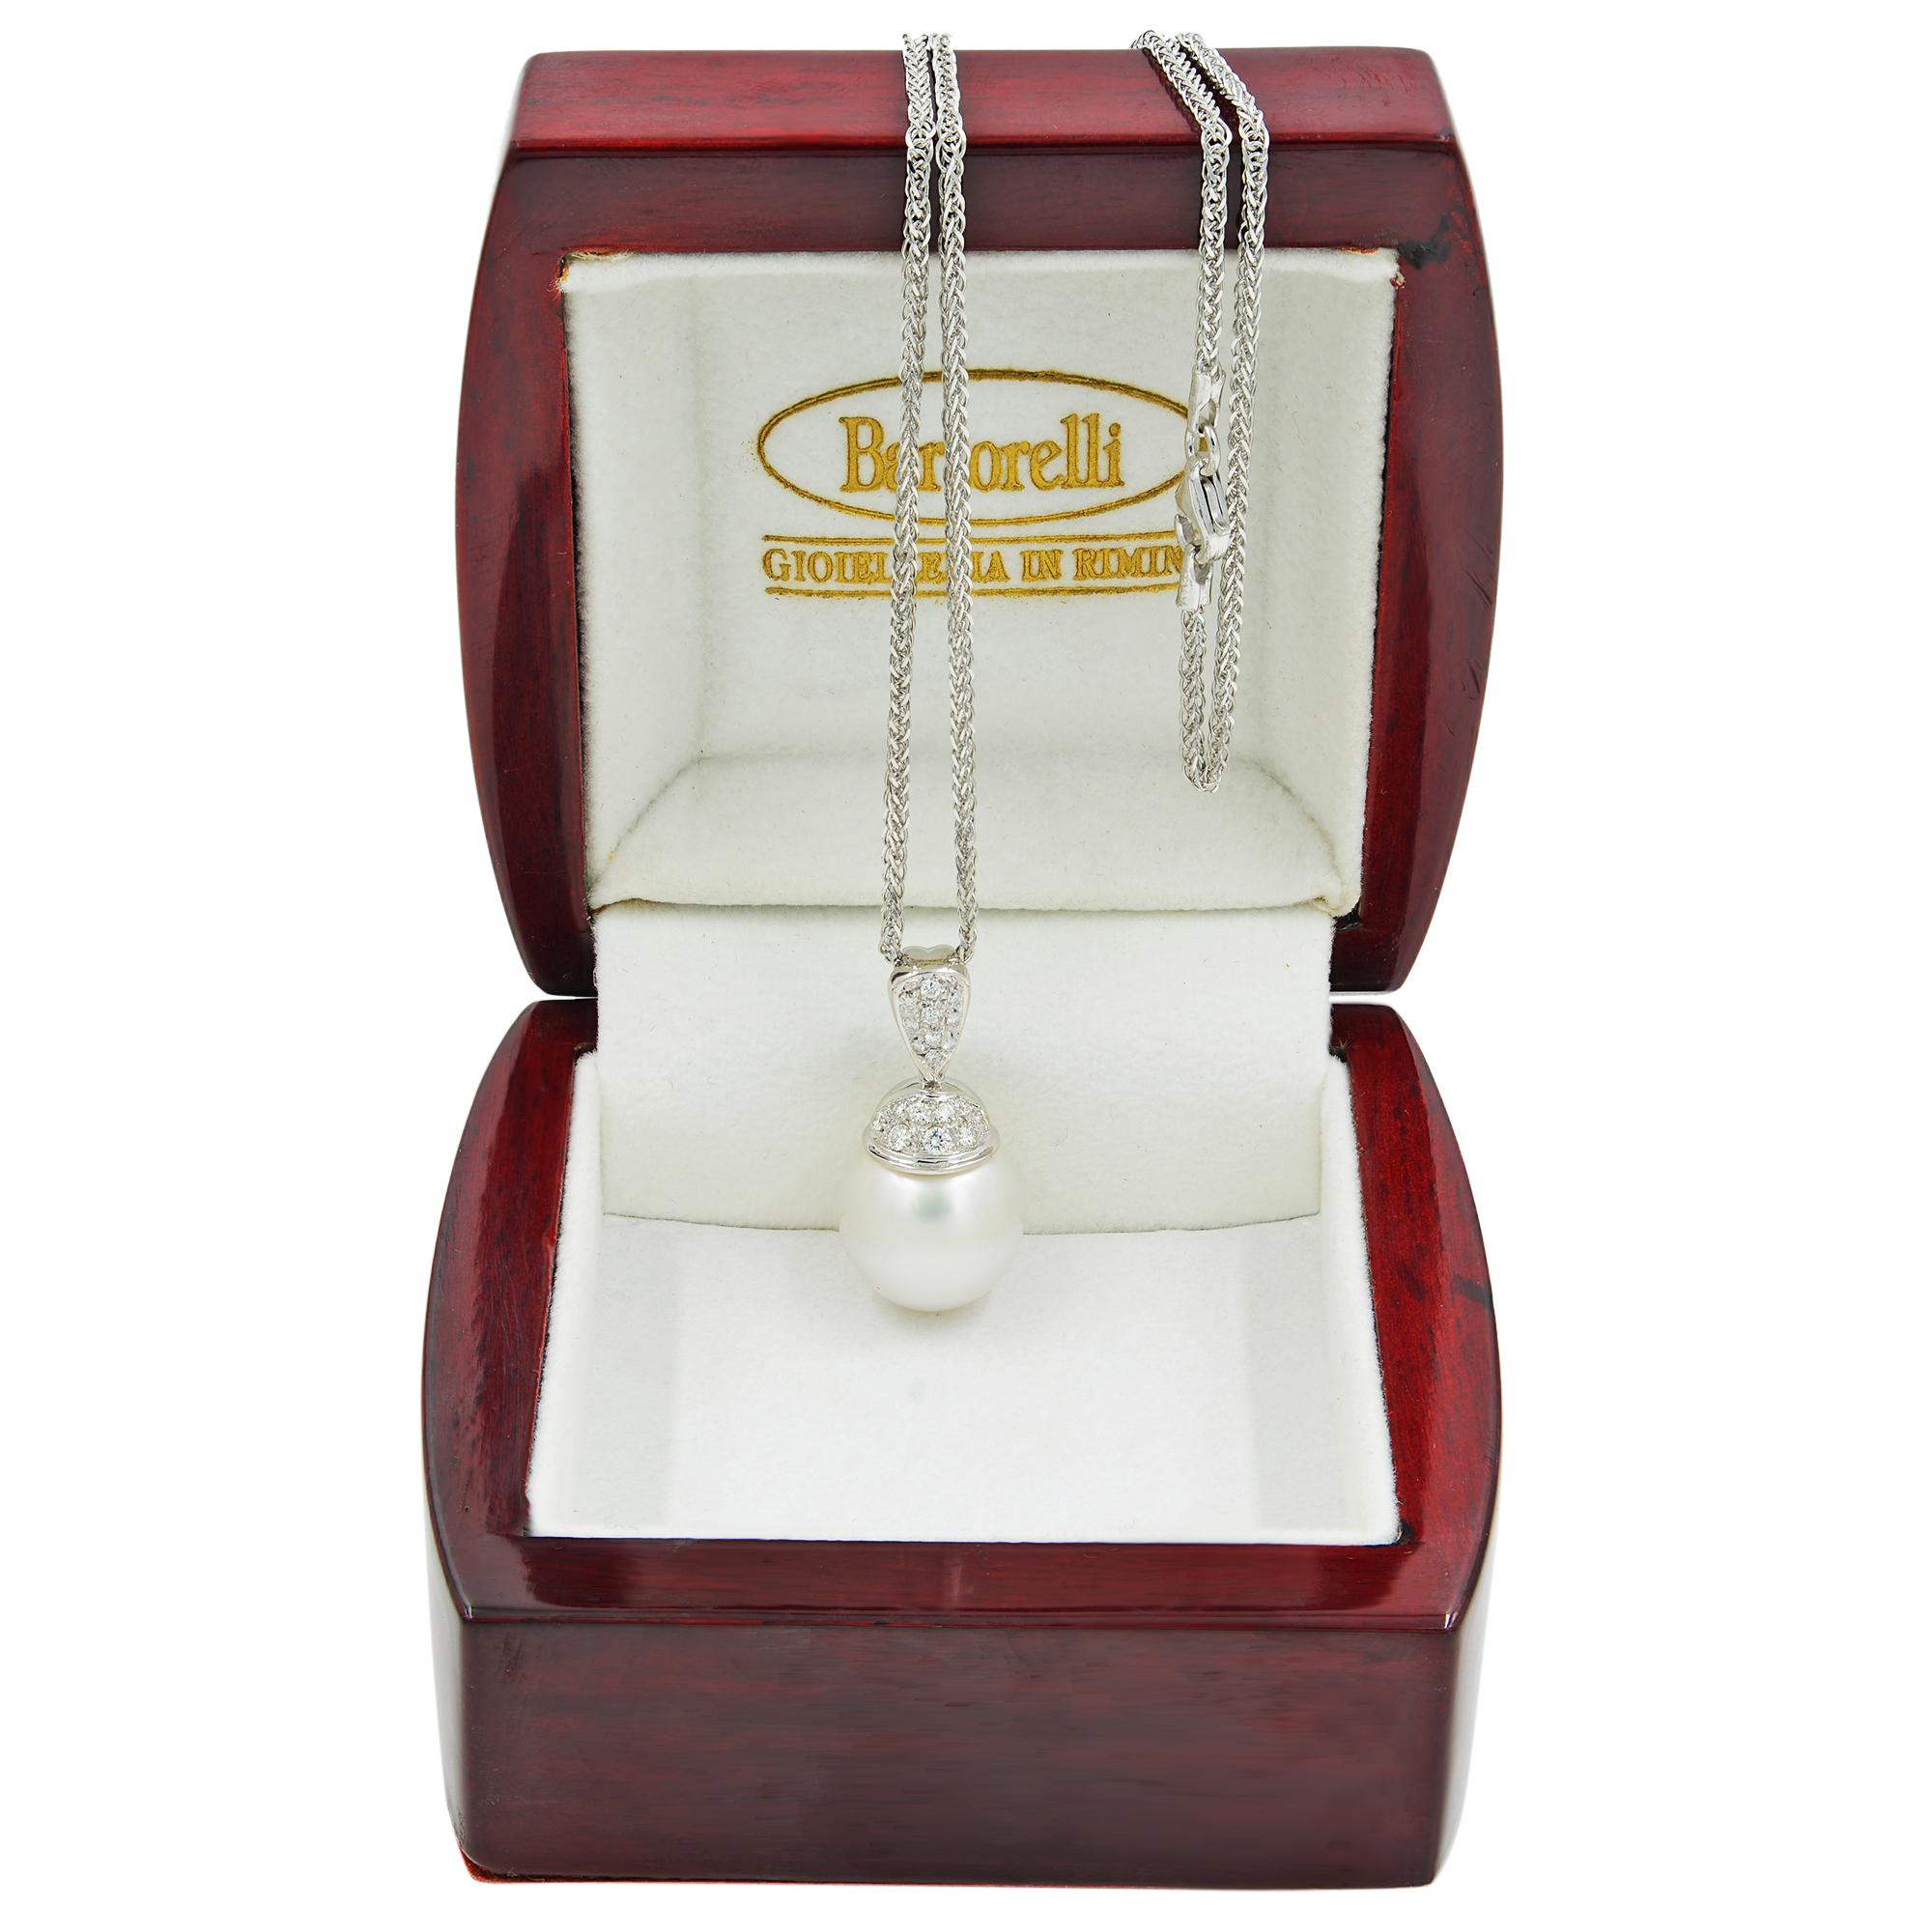 Dieses wunderschöne Perlen- und Diamantencollier ist aus 18 Karat Weißgold gefertigt und mit weißen Diamanten von 0,25 Karat besetzt. Kettenlänge: 16 Zoll. Länge des Anhängers: 16 mm. Gesamtgewicht: 9,8 Gramm. Punzierungen: 750. Dieser Anhänger ist